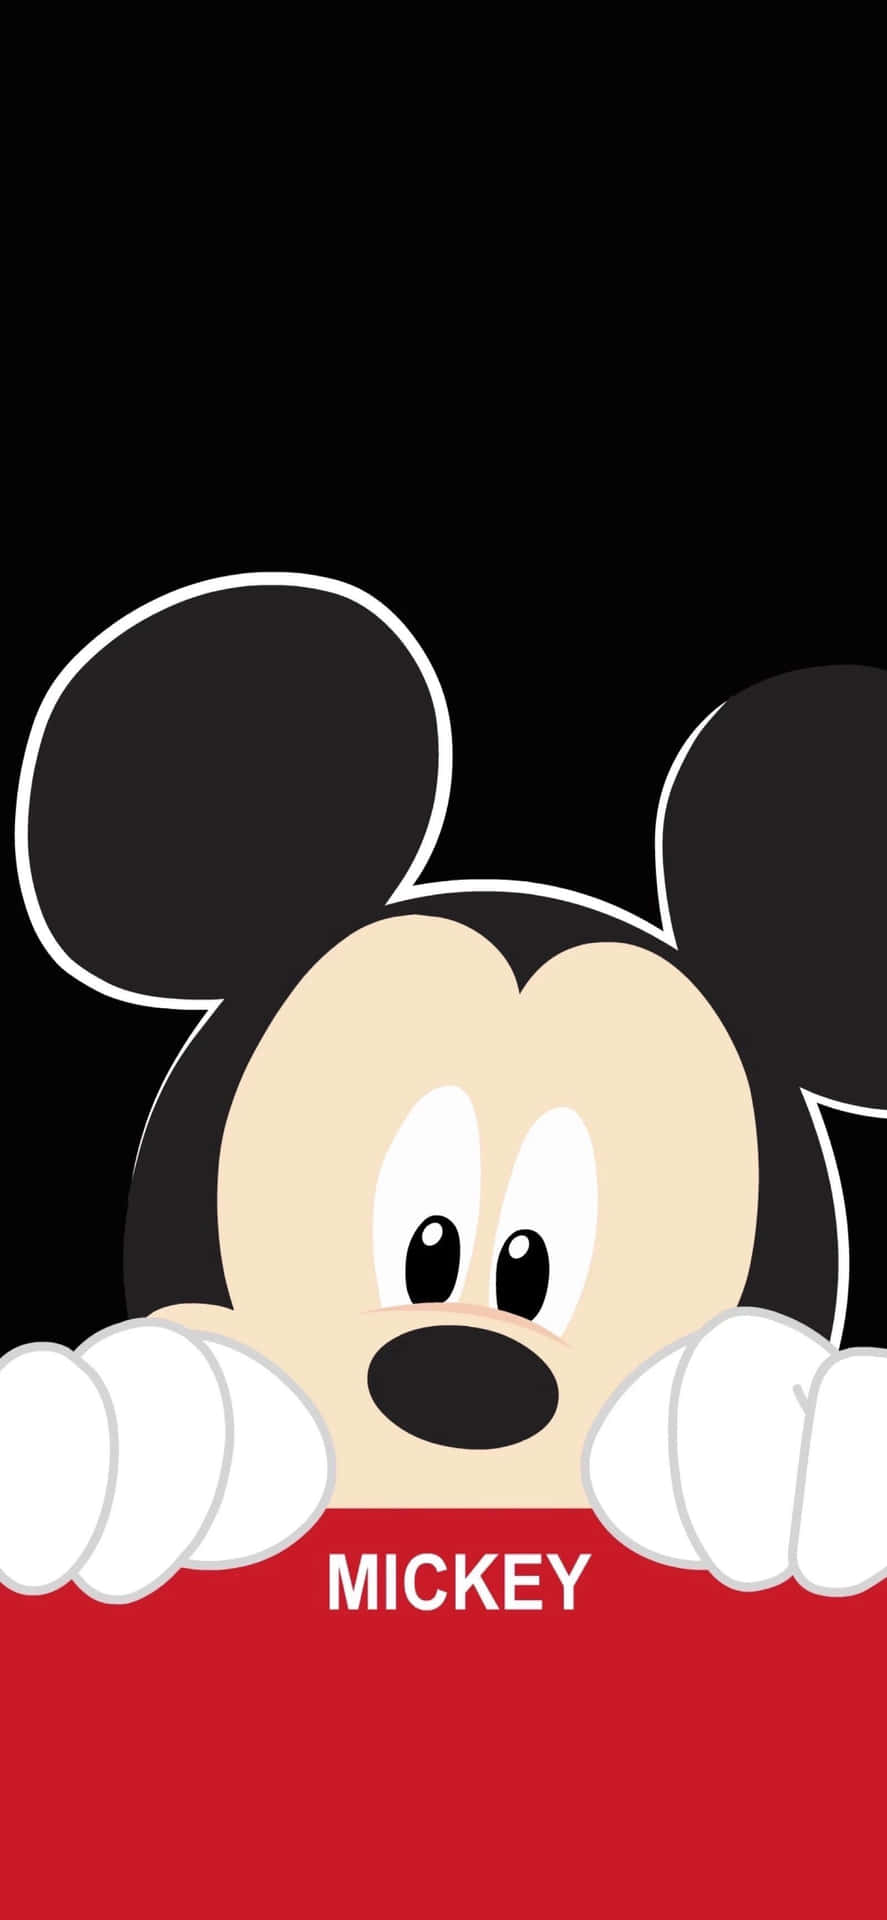 Visadin Disney-anda Med Dessa Ikoniska Musse Pigg-öron! Wallpaper